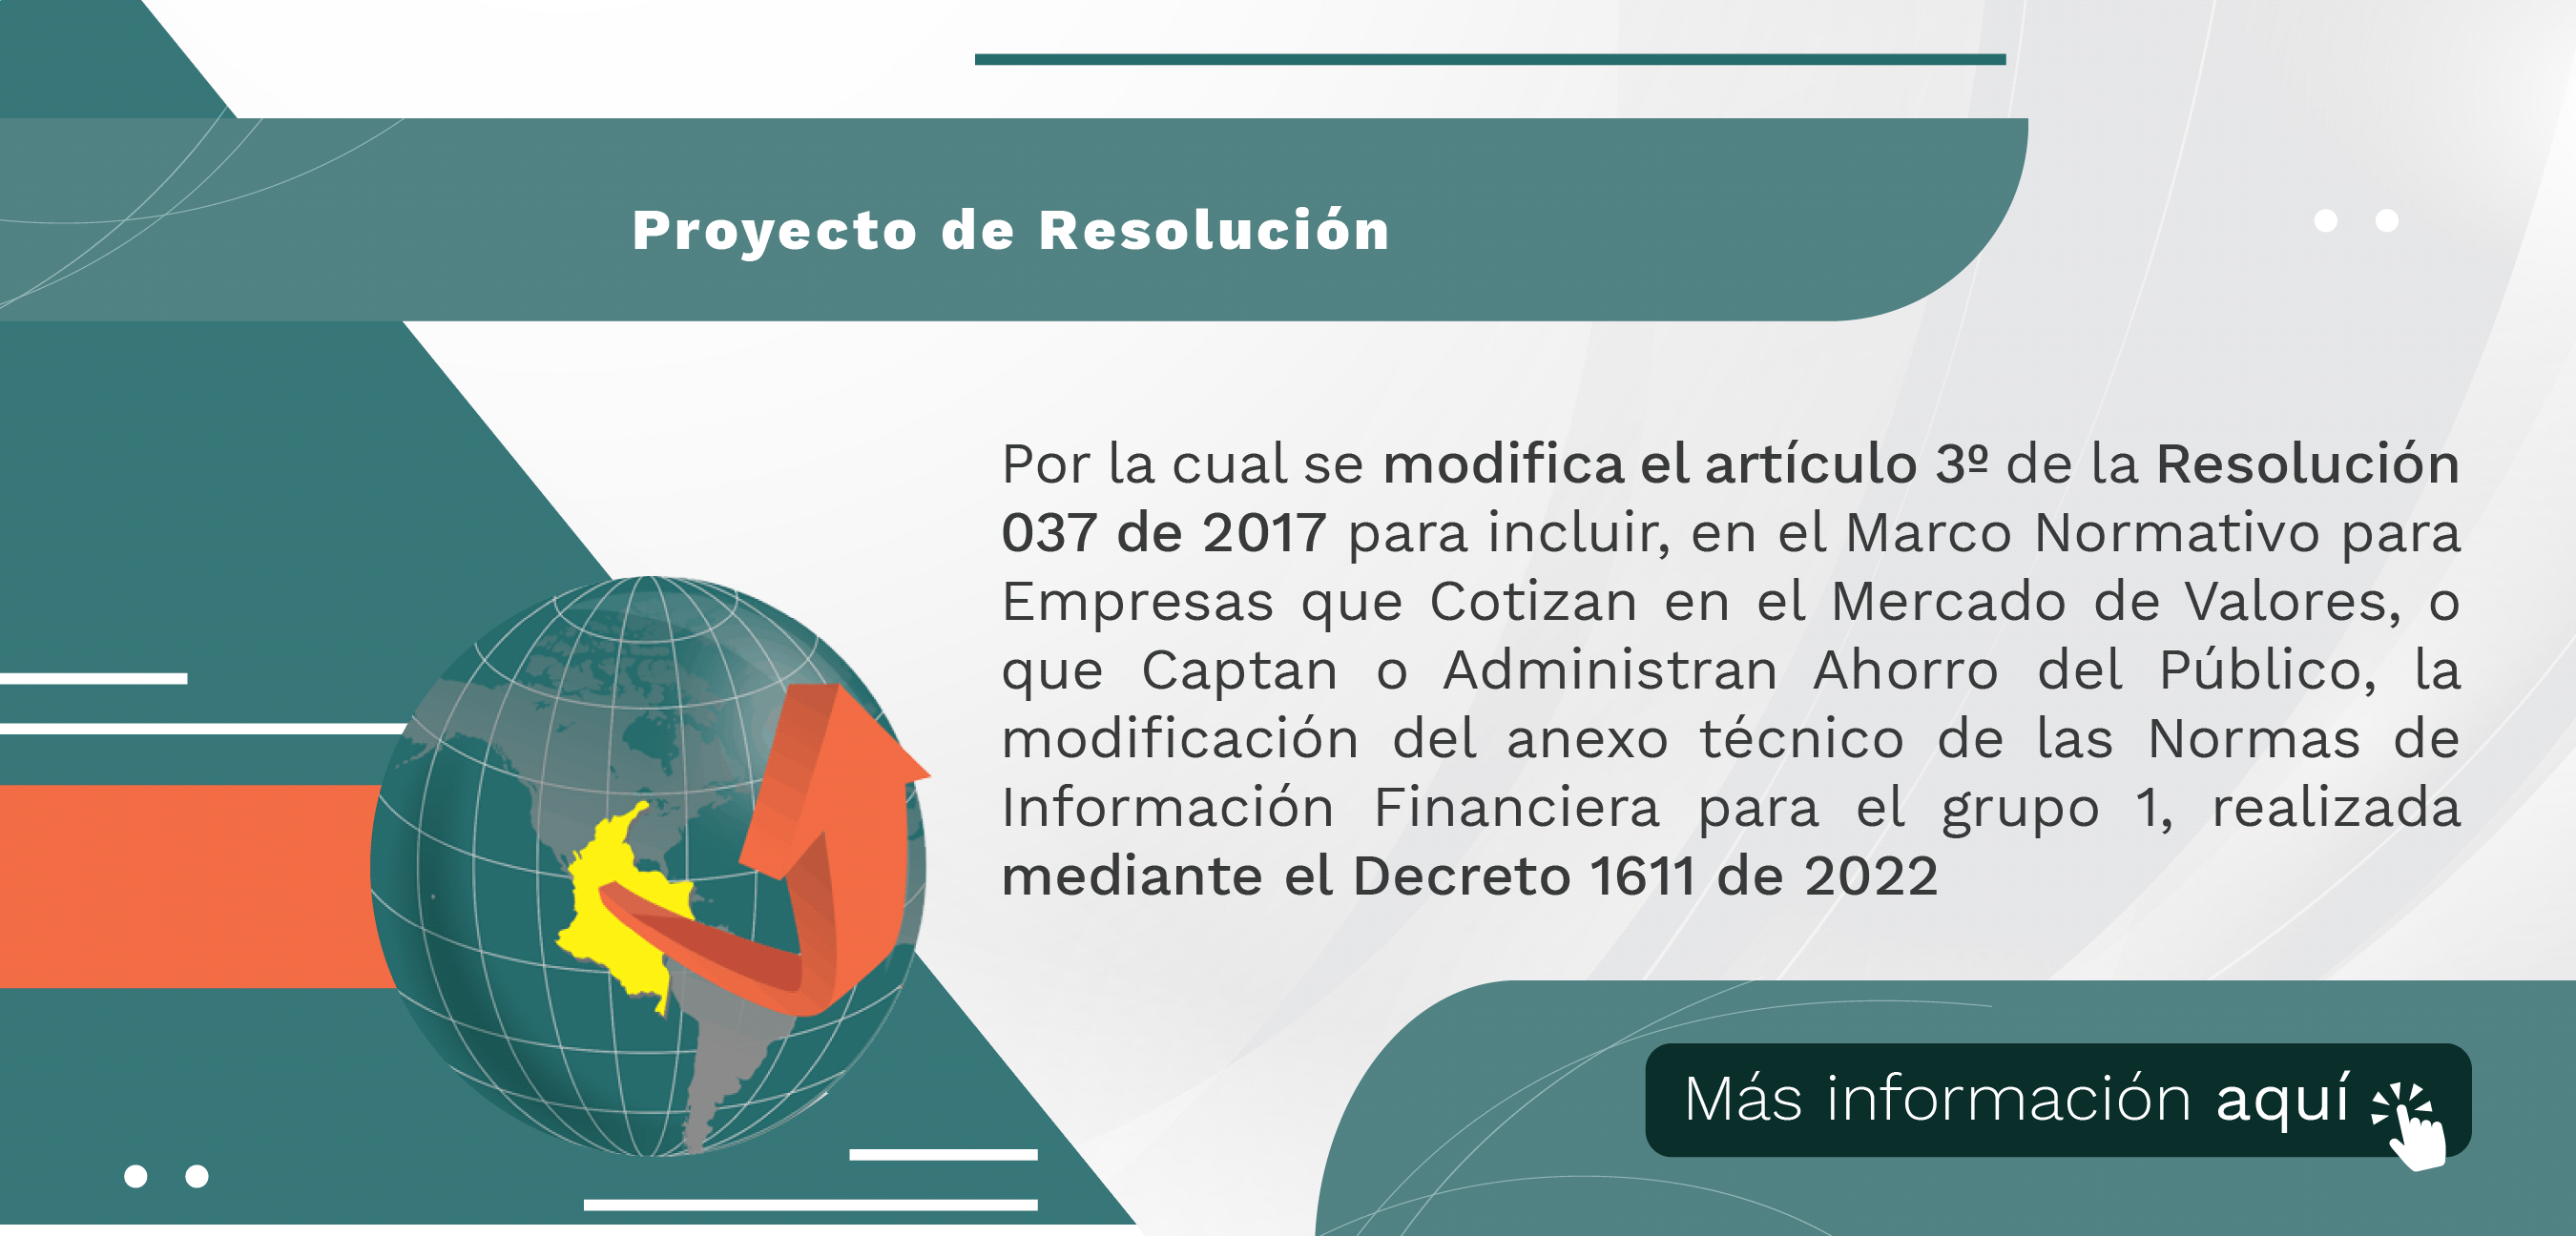 Proyecto de Resolución “Por la cual se incluye la modificación del anexo técnico de las Normas de Información Financiera para el grupo 1, realizada mediante el Decreto 1611 de 2022”